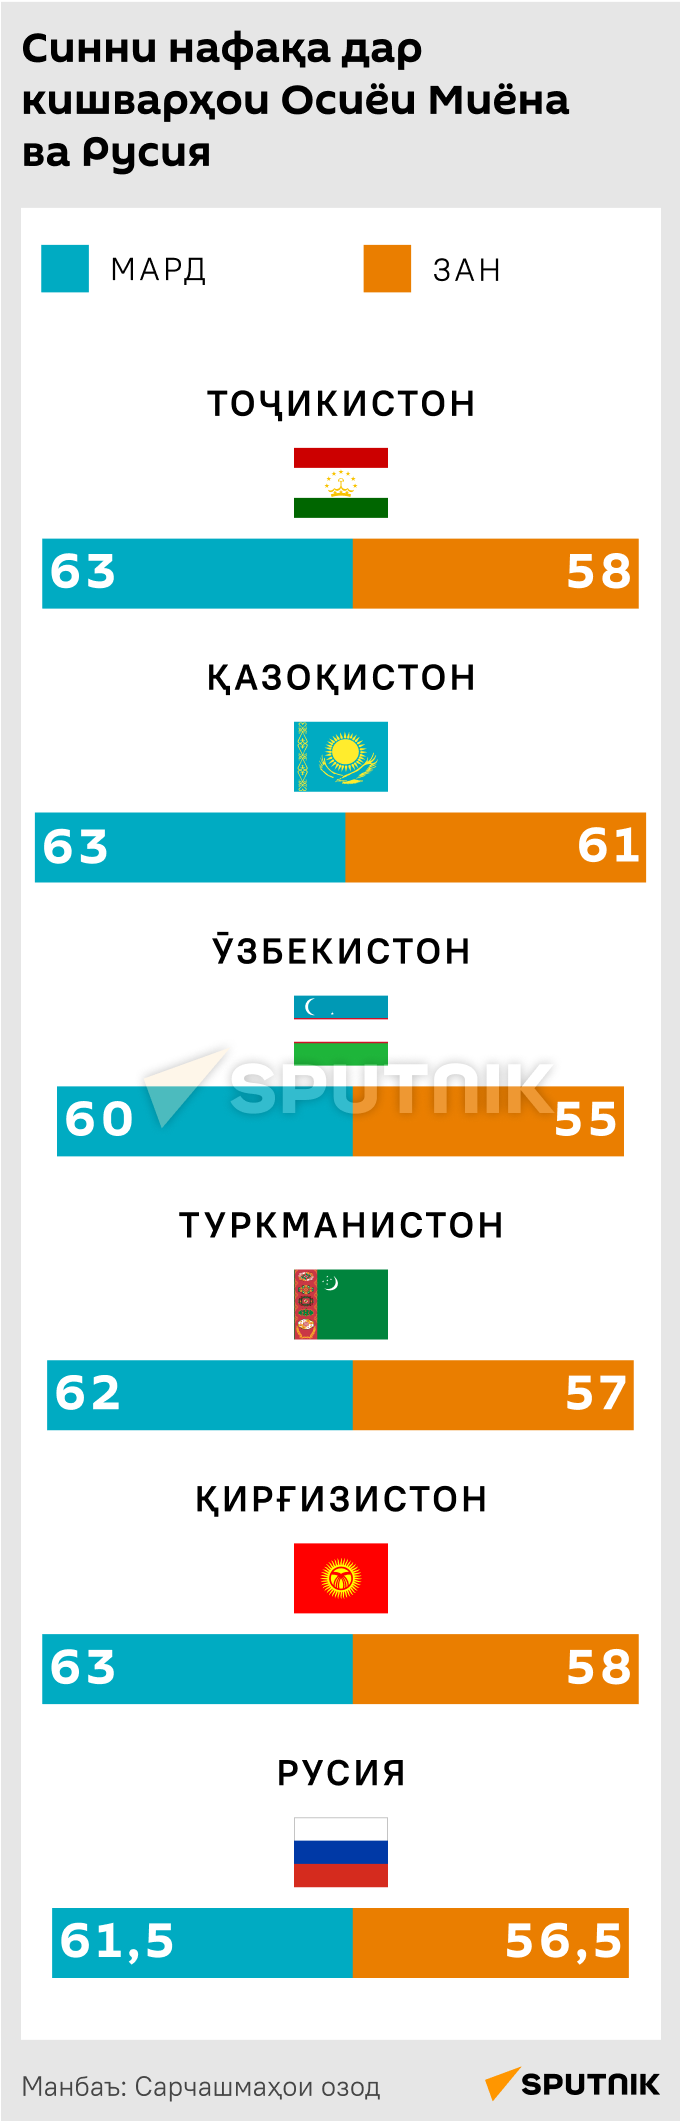 Пенсионный возраст в странах ЦА и России - Sputnik Тоҷикистон